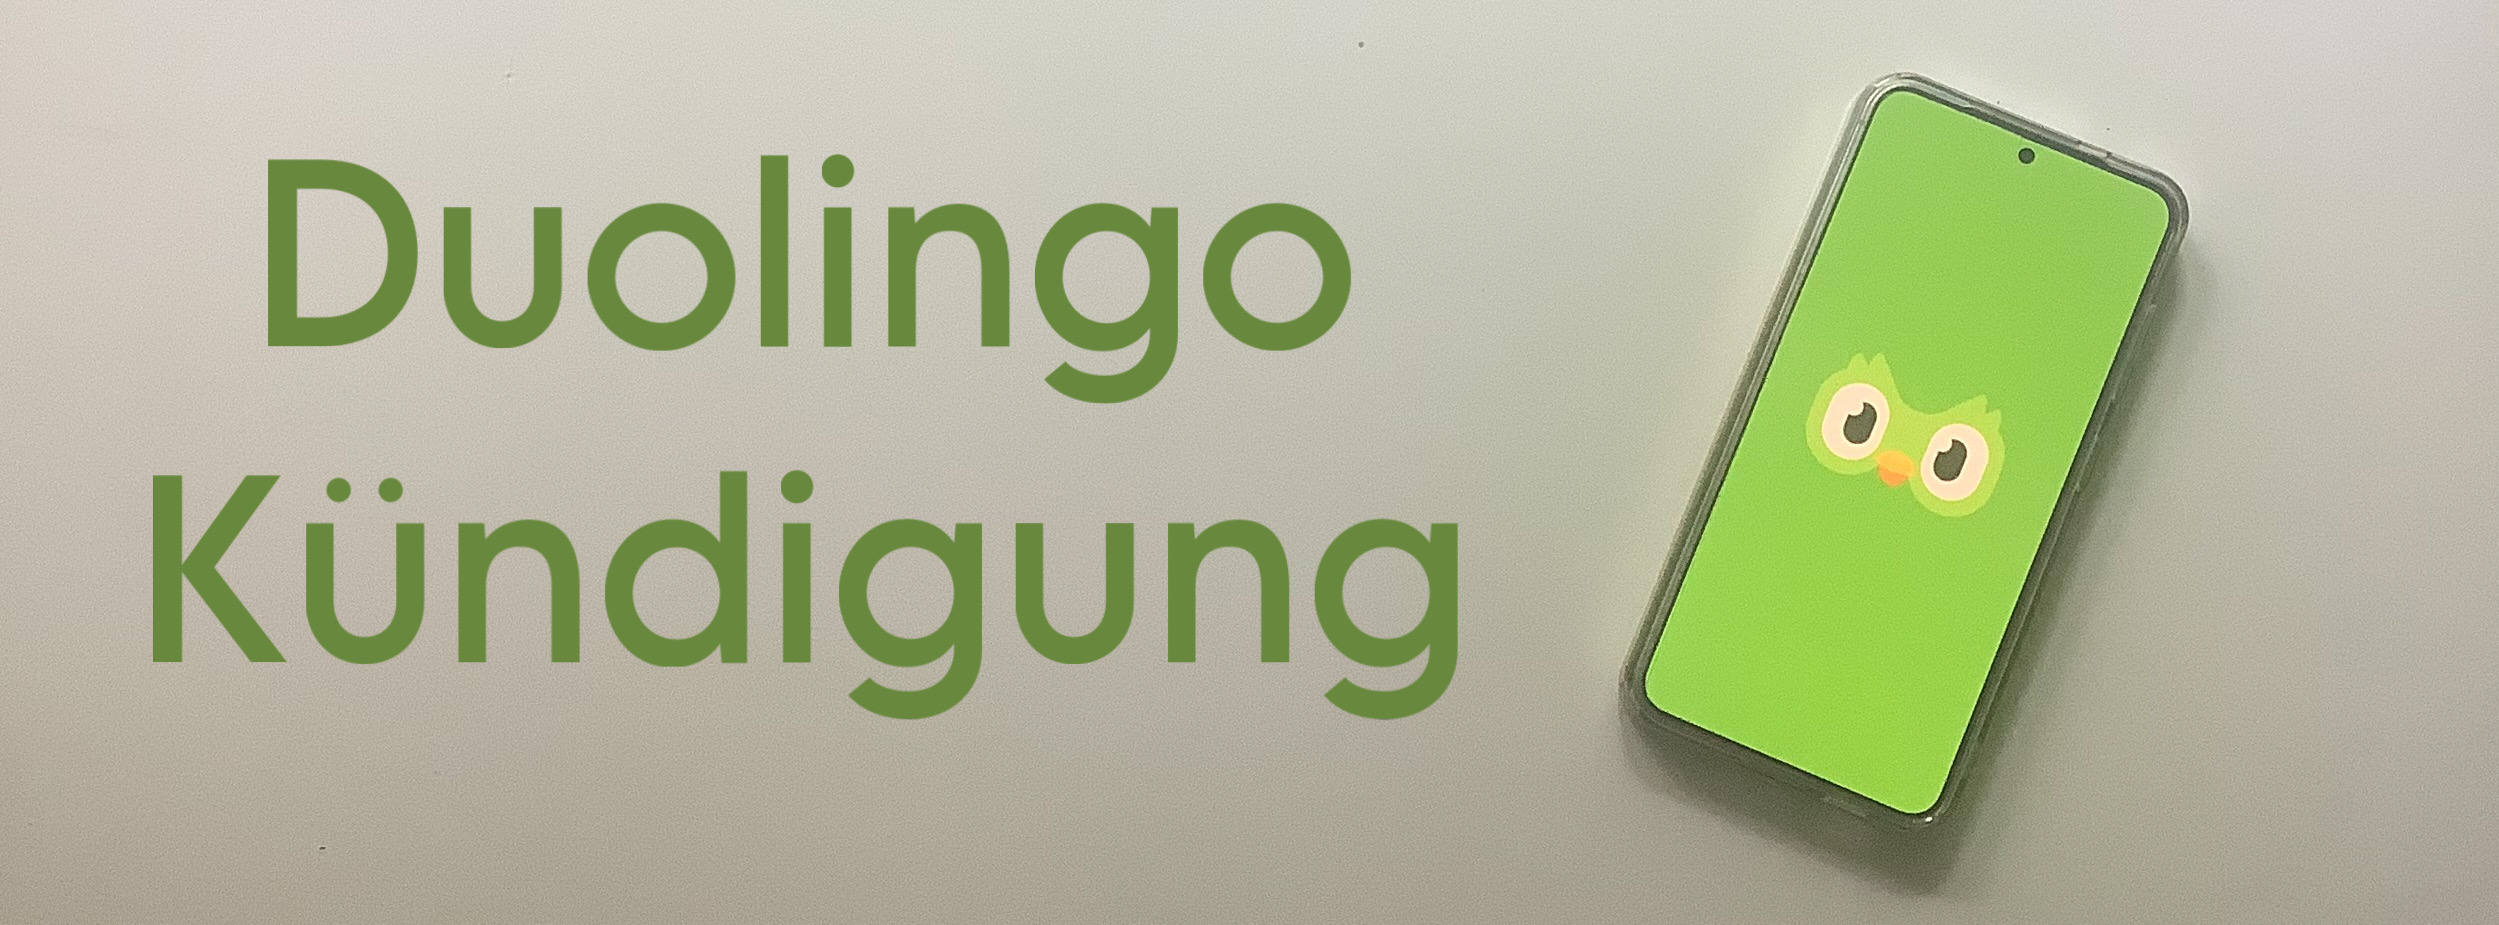 Duolingo Kündigung Cover